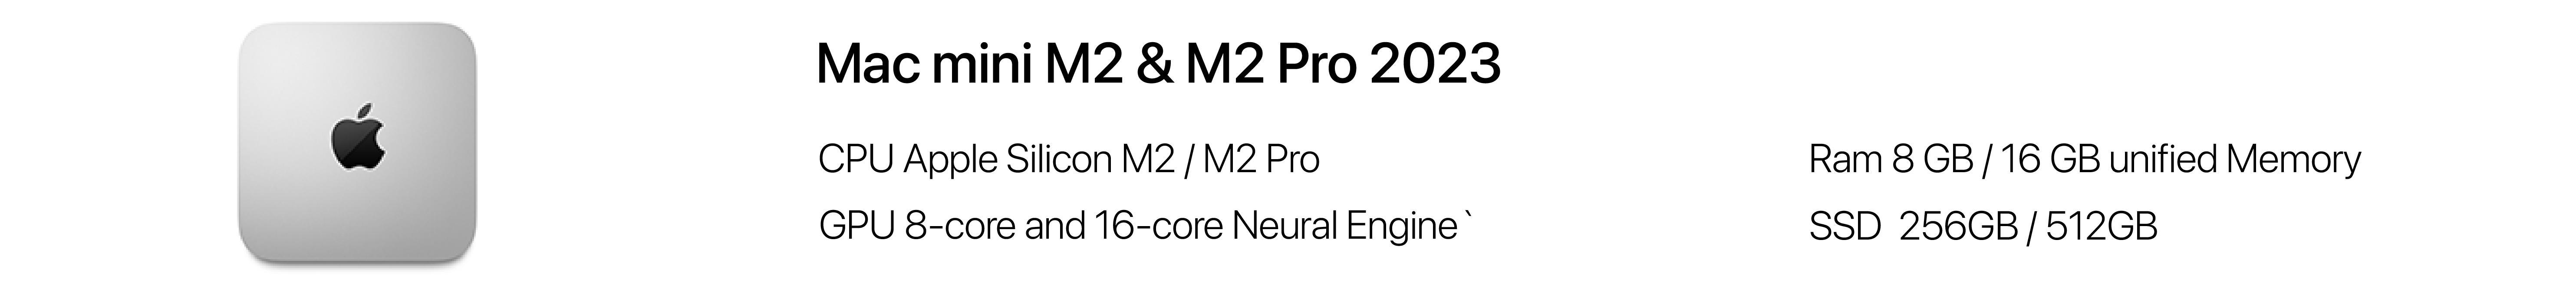 Mac mini M2 & M2 Pro 2023